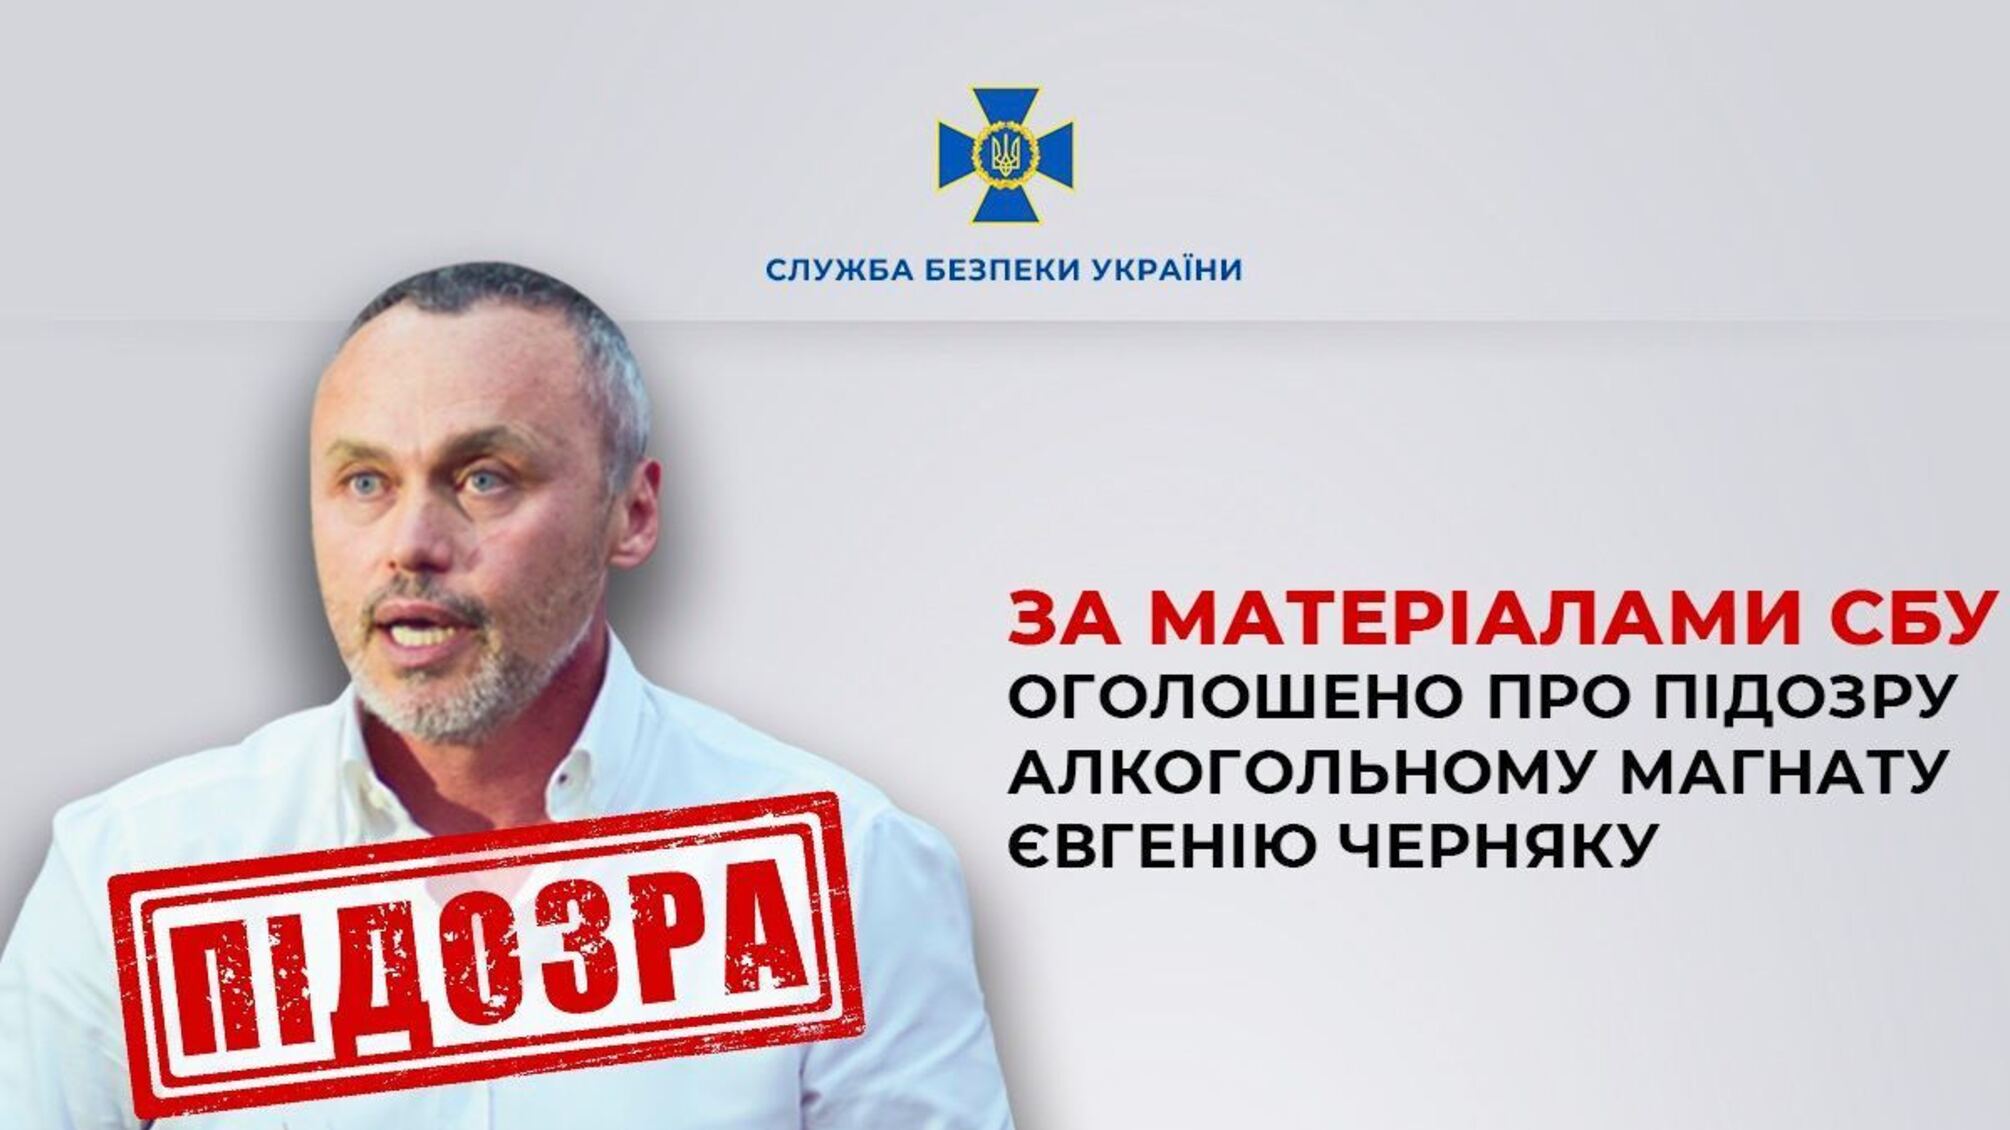 СБУ объявила подозрение алкогольному магнату Евгению Черняку